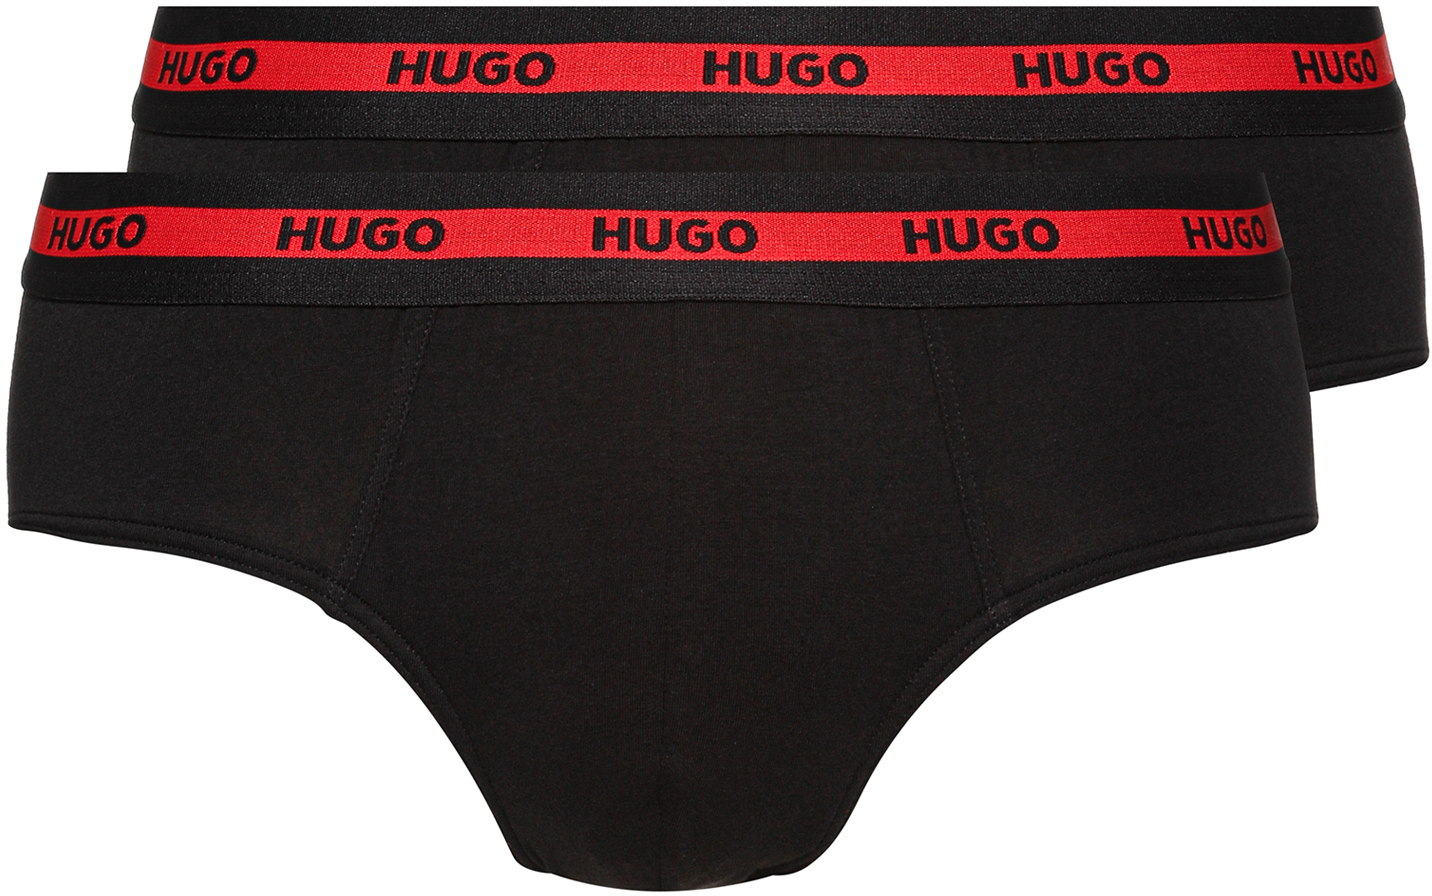 Hugo Boss 2 PACK - pánske slipy HUGO 50469788-001 XL + 2 mesiace na vrátenie tovaru